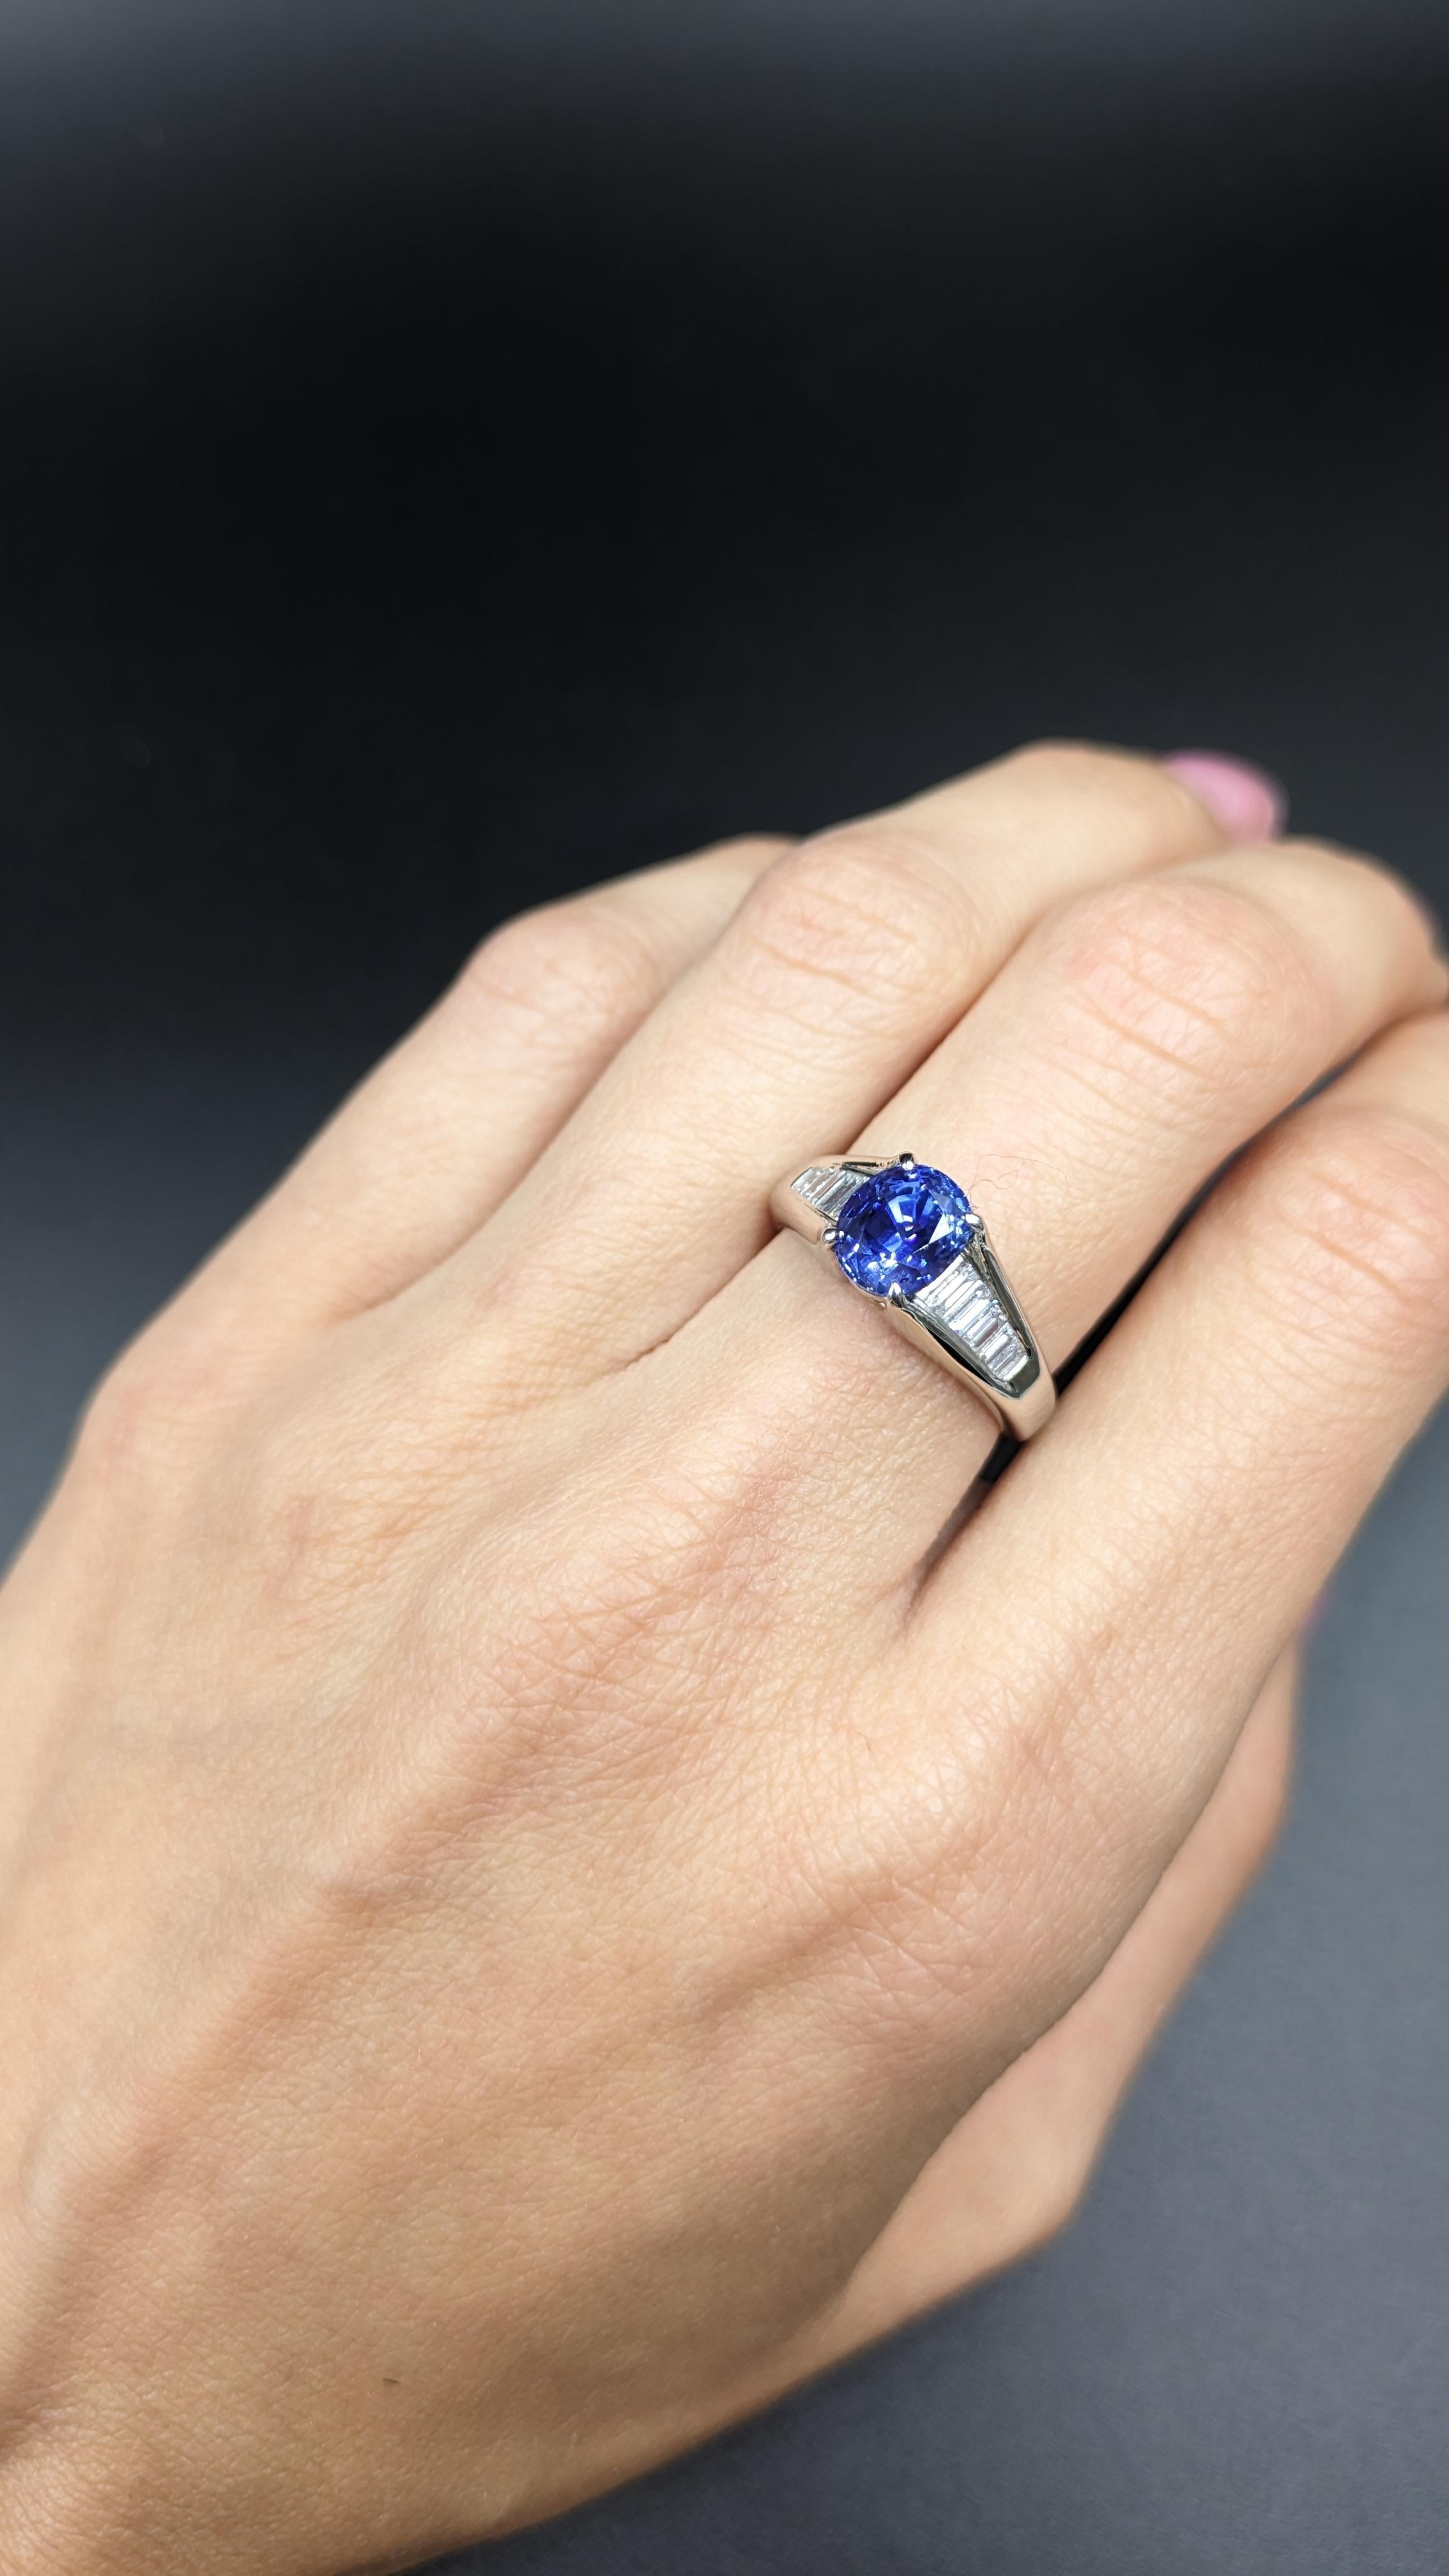 0.31 Carat Diamond & 2.49 Carat Blue Sapphire Ring in Platinum 2